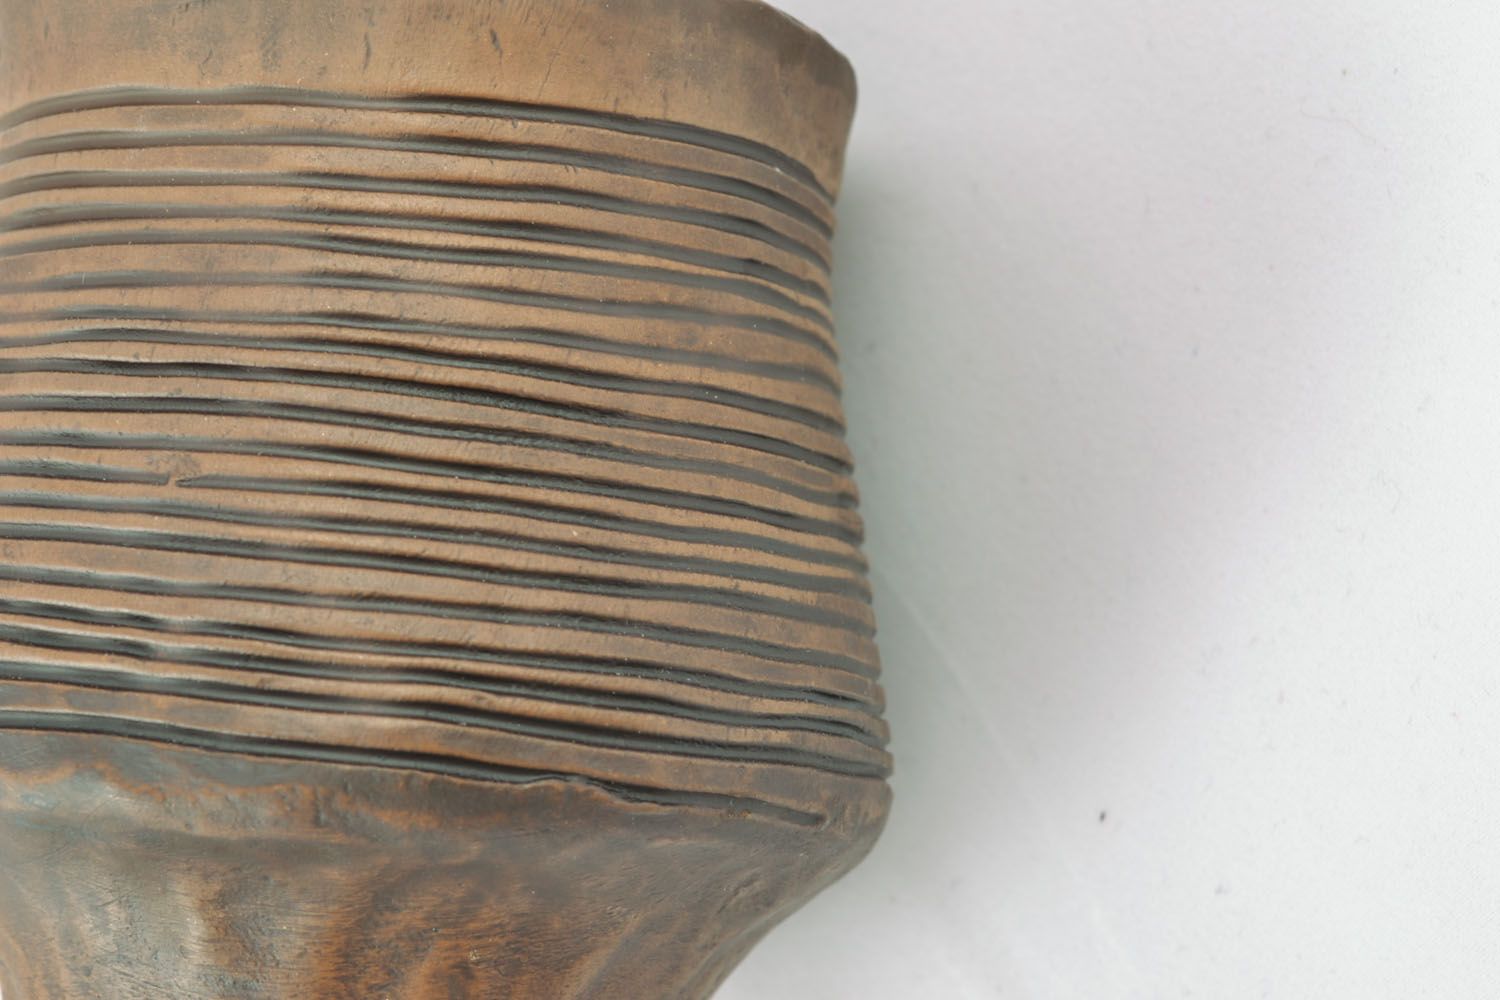 Vaso de cerámica foto 3